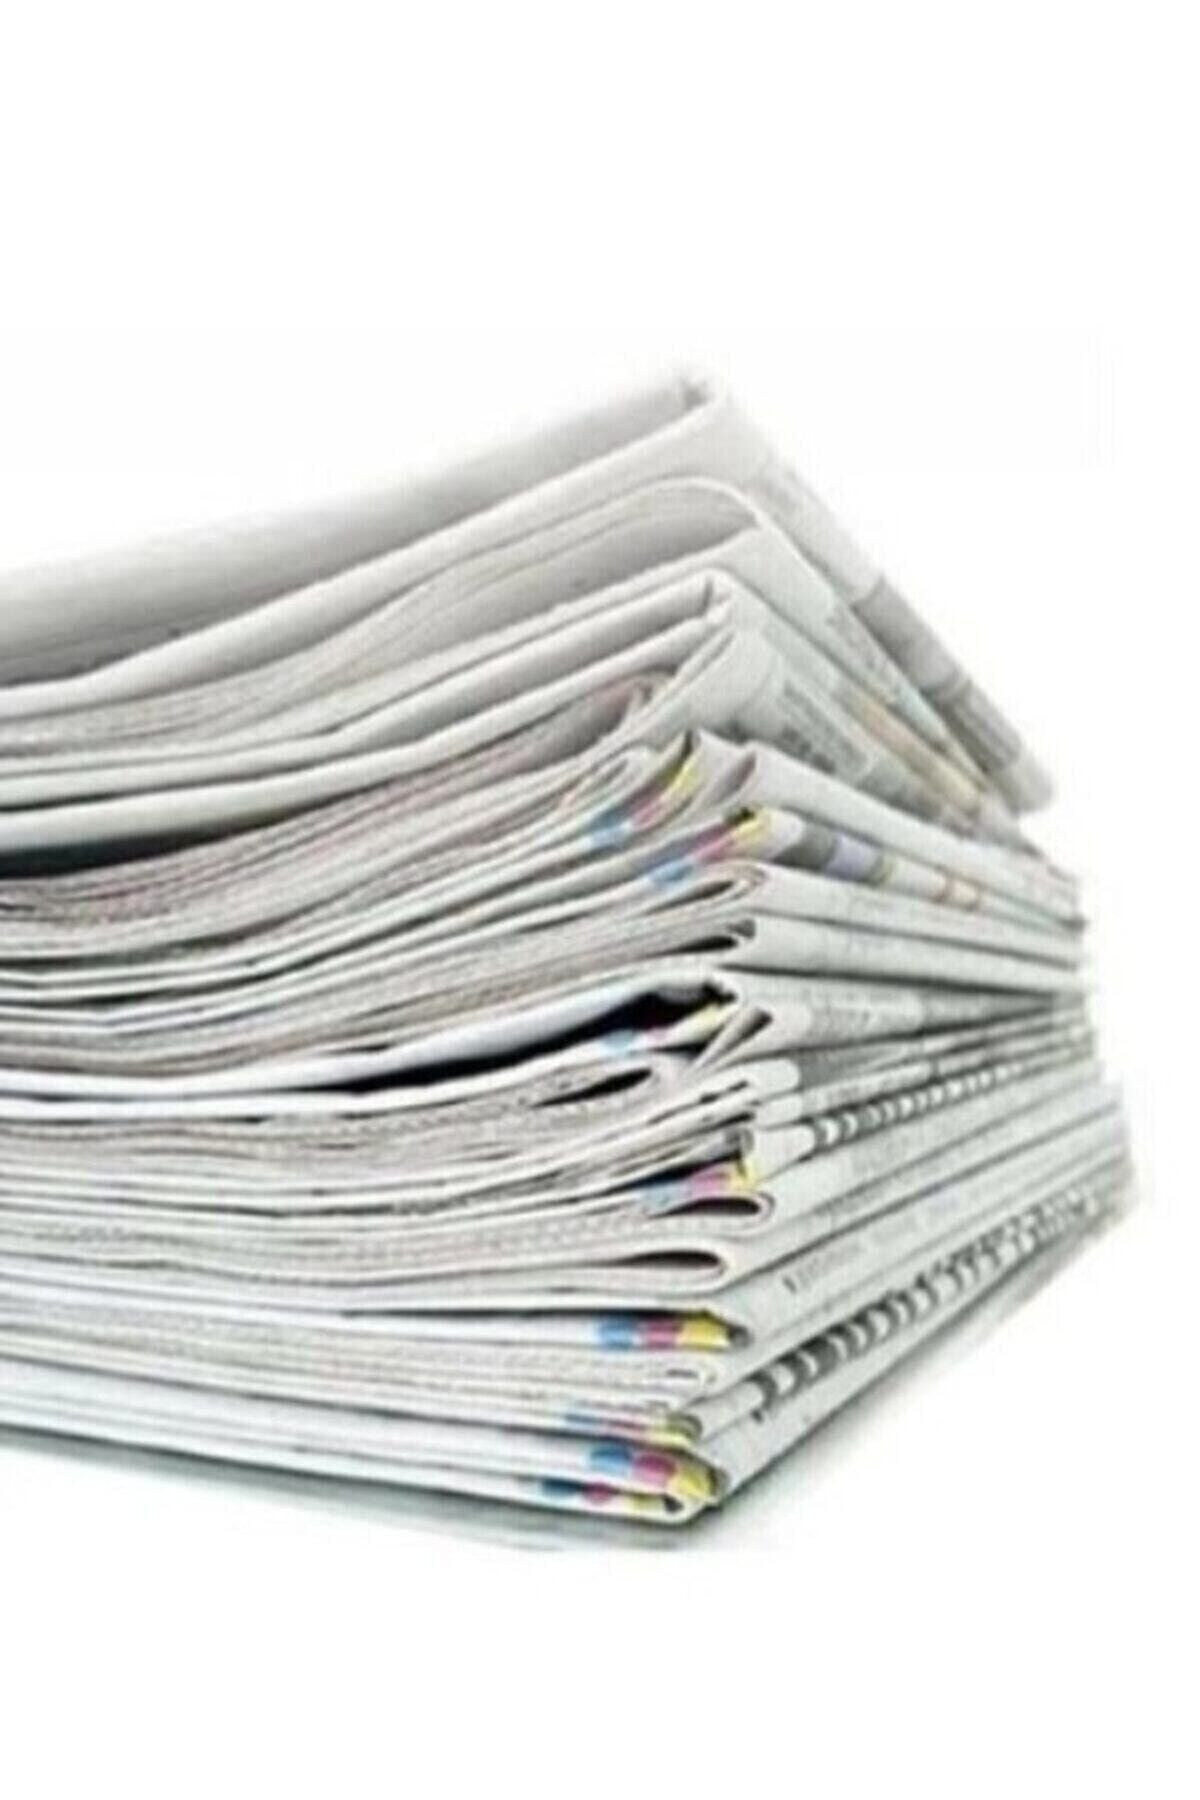 YALOVA AMBALAJ Eski Gazete 1 Kg Taşınma Gazetesi Temiz Gazete Kağıdı Kağıt Gazete